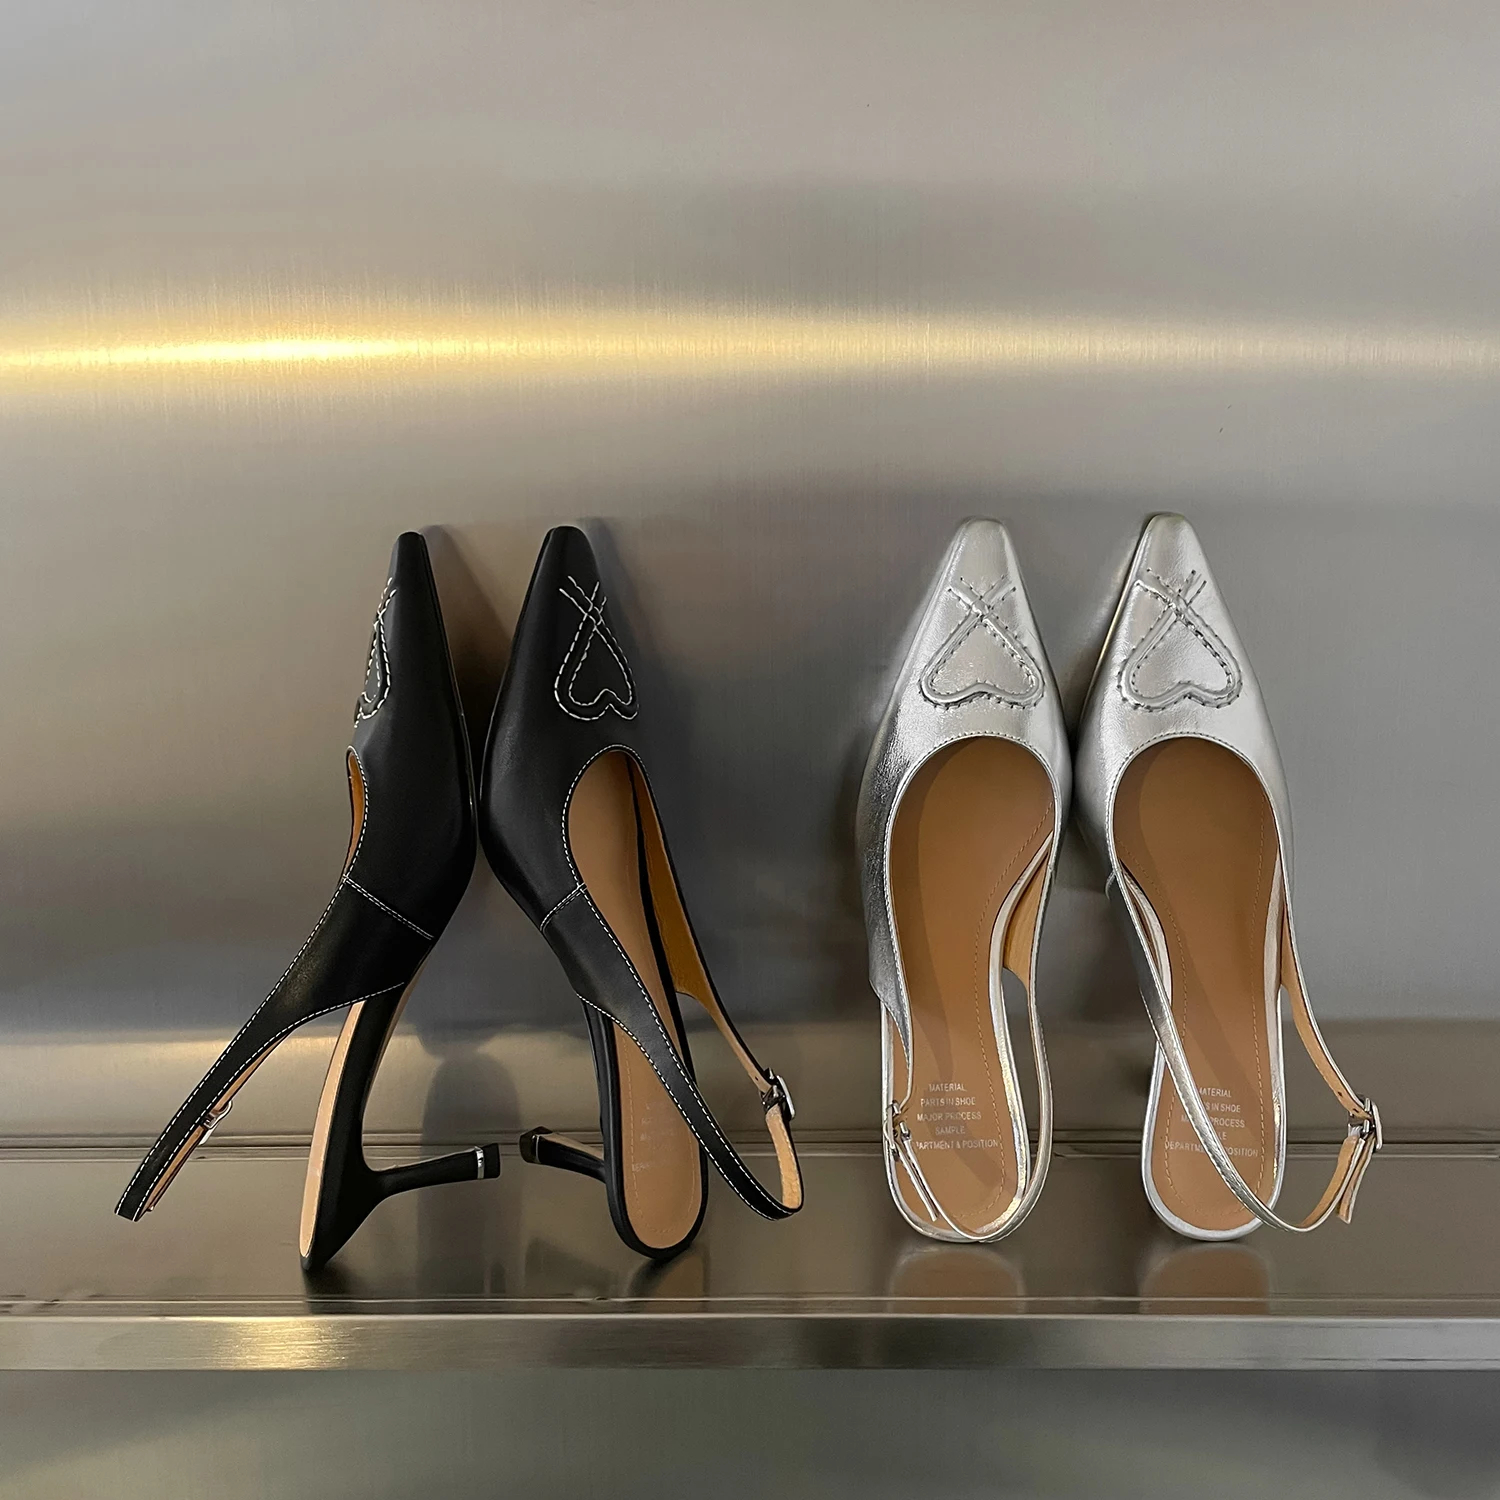  The Allure of dsw shoes women’s heels插图3